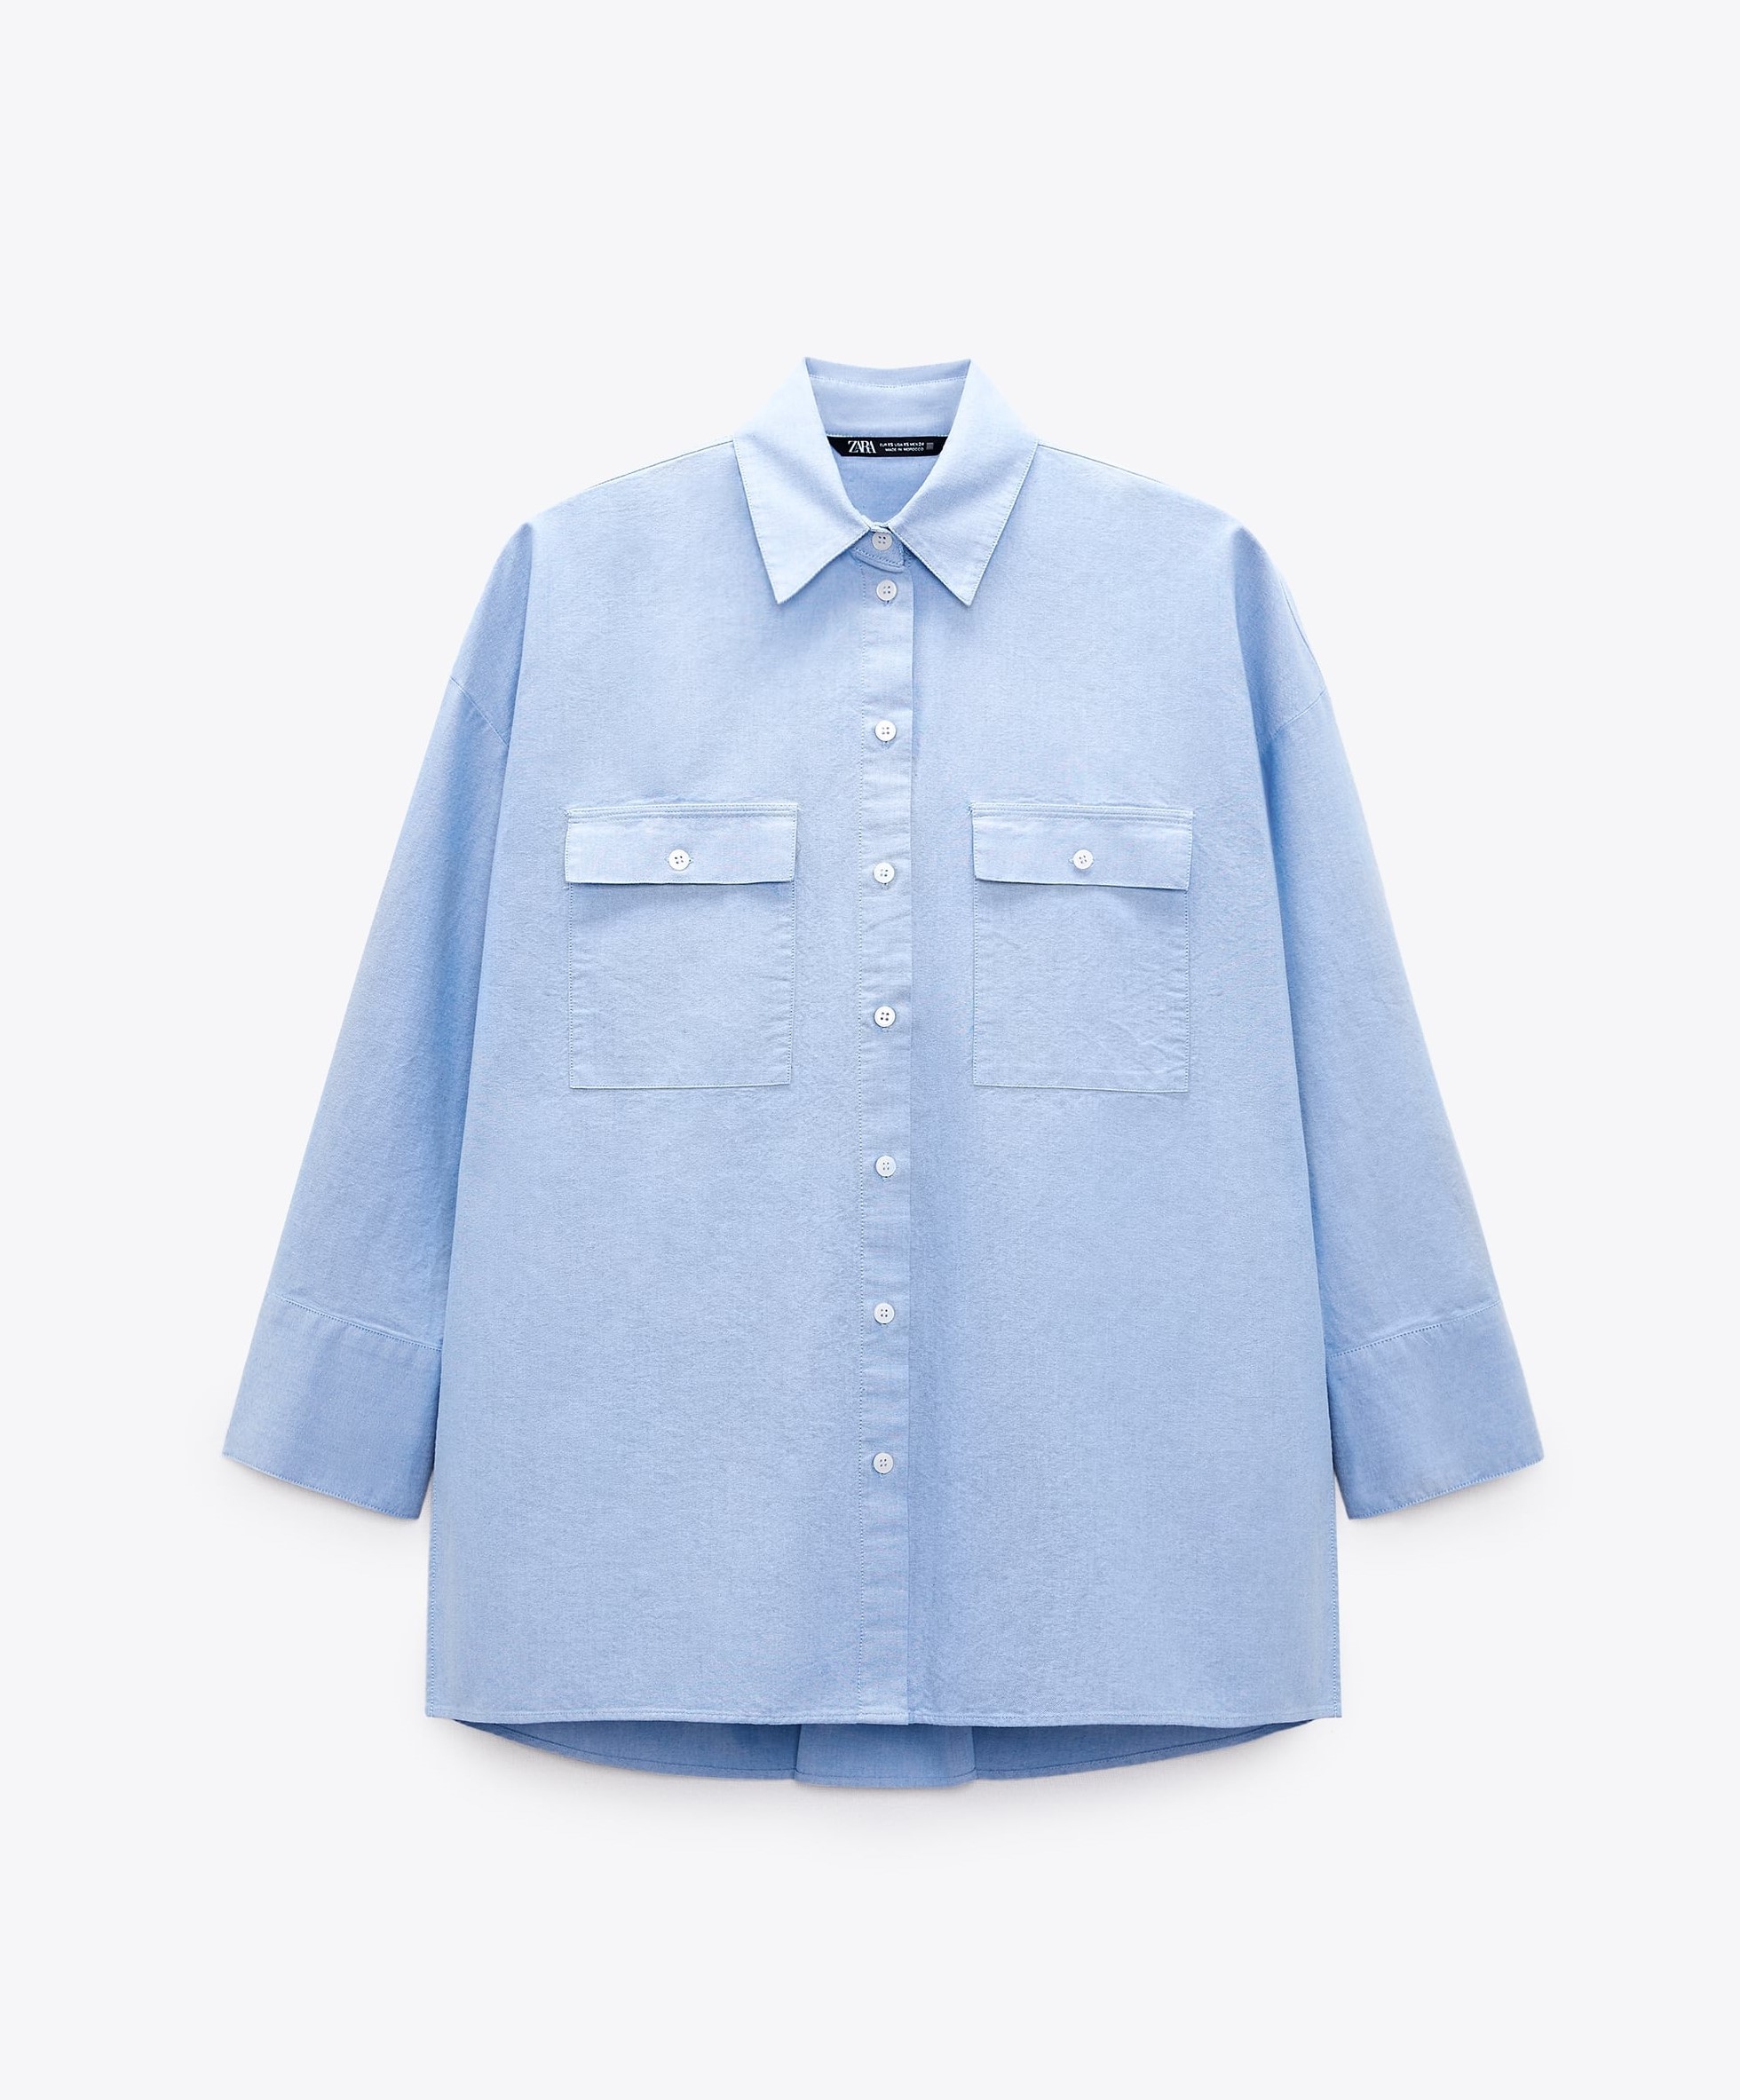 Camisa Oxford azul de Zara (25,95 euros, en rebajas: 17,99 euros).